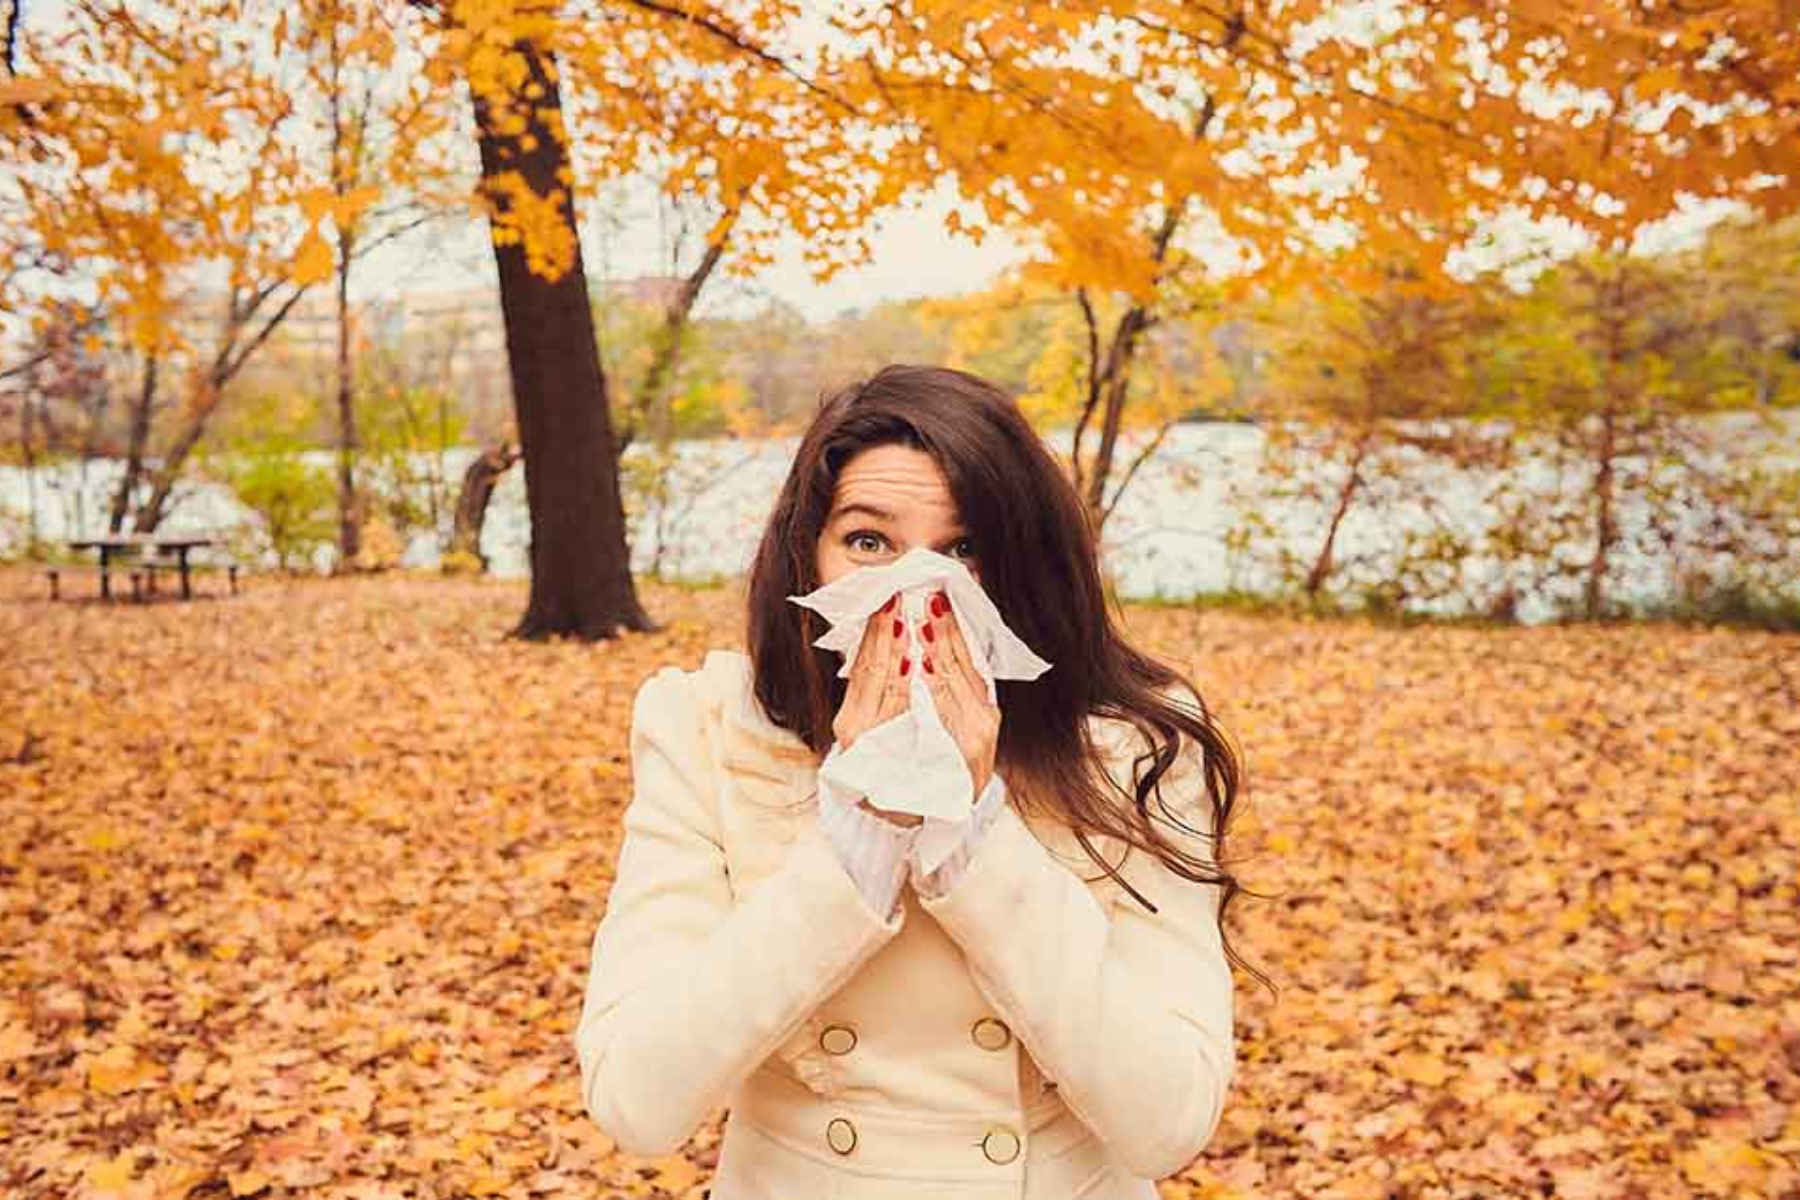 Αλλεργίες: Μπορούν να εμφανιστούν οι αλλεργίες το φθινόπωρο;